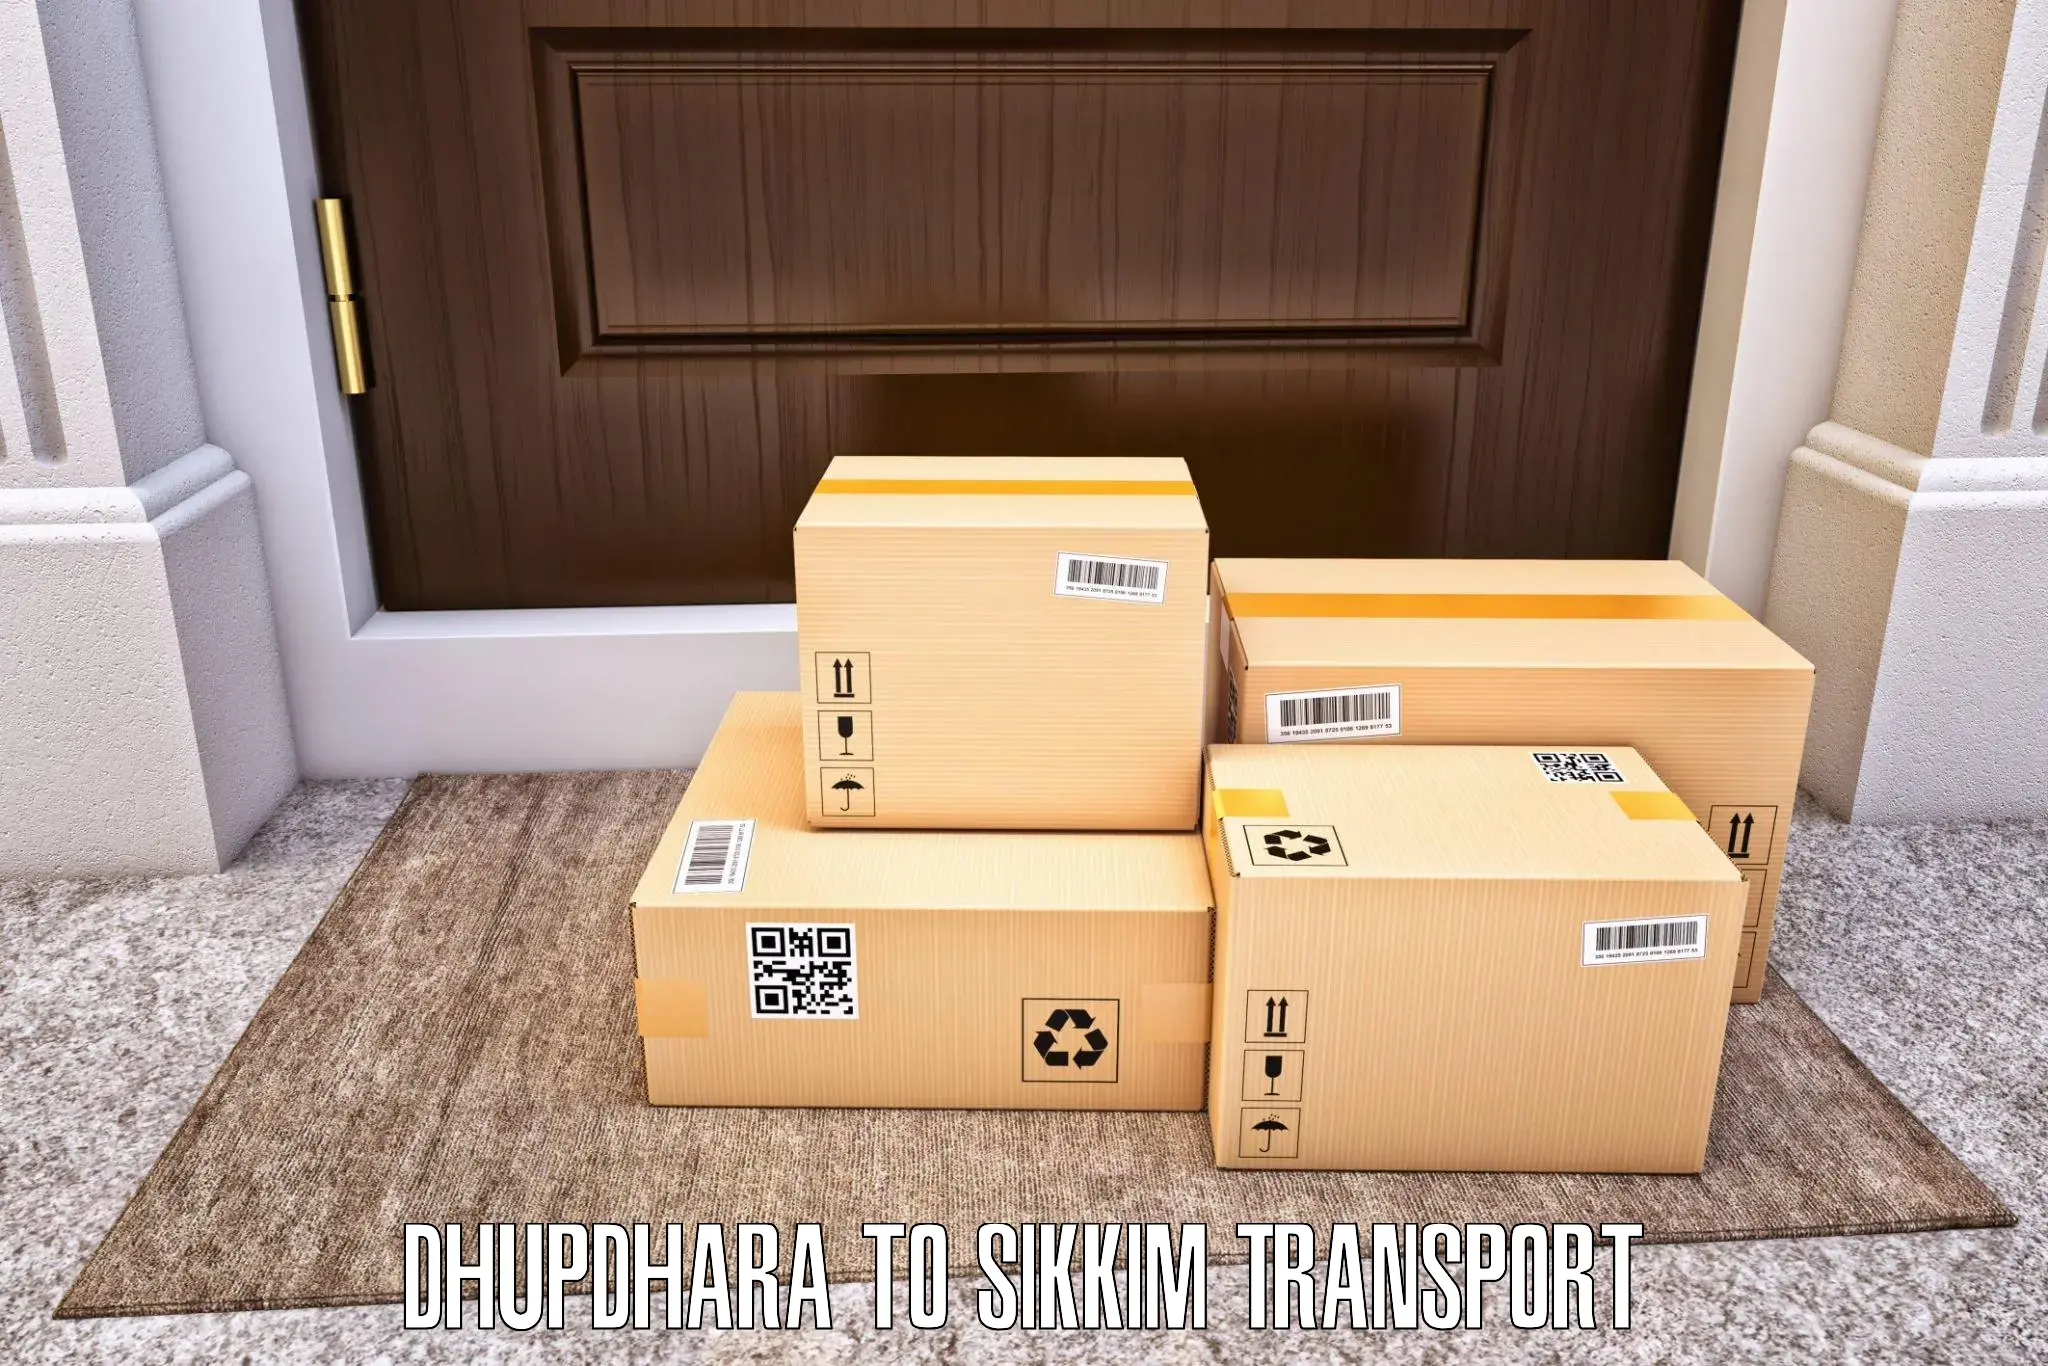 Furniture transport service Dhupdhara to Mangan